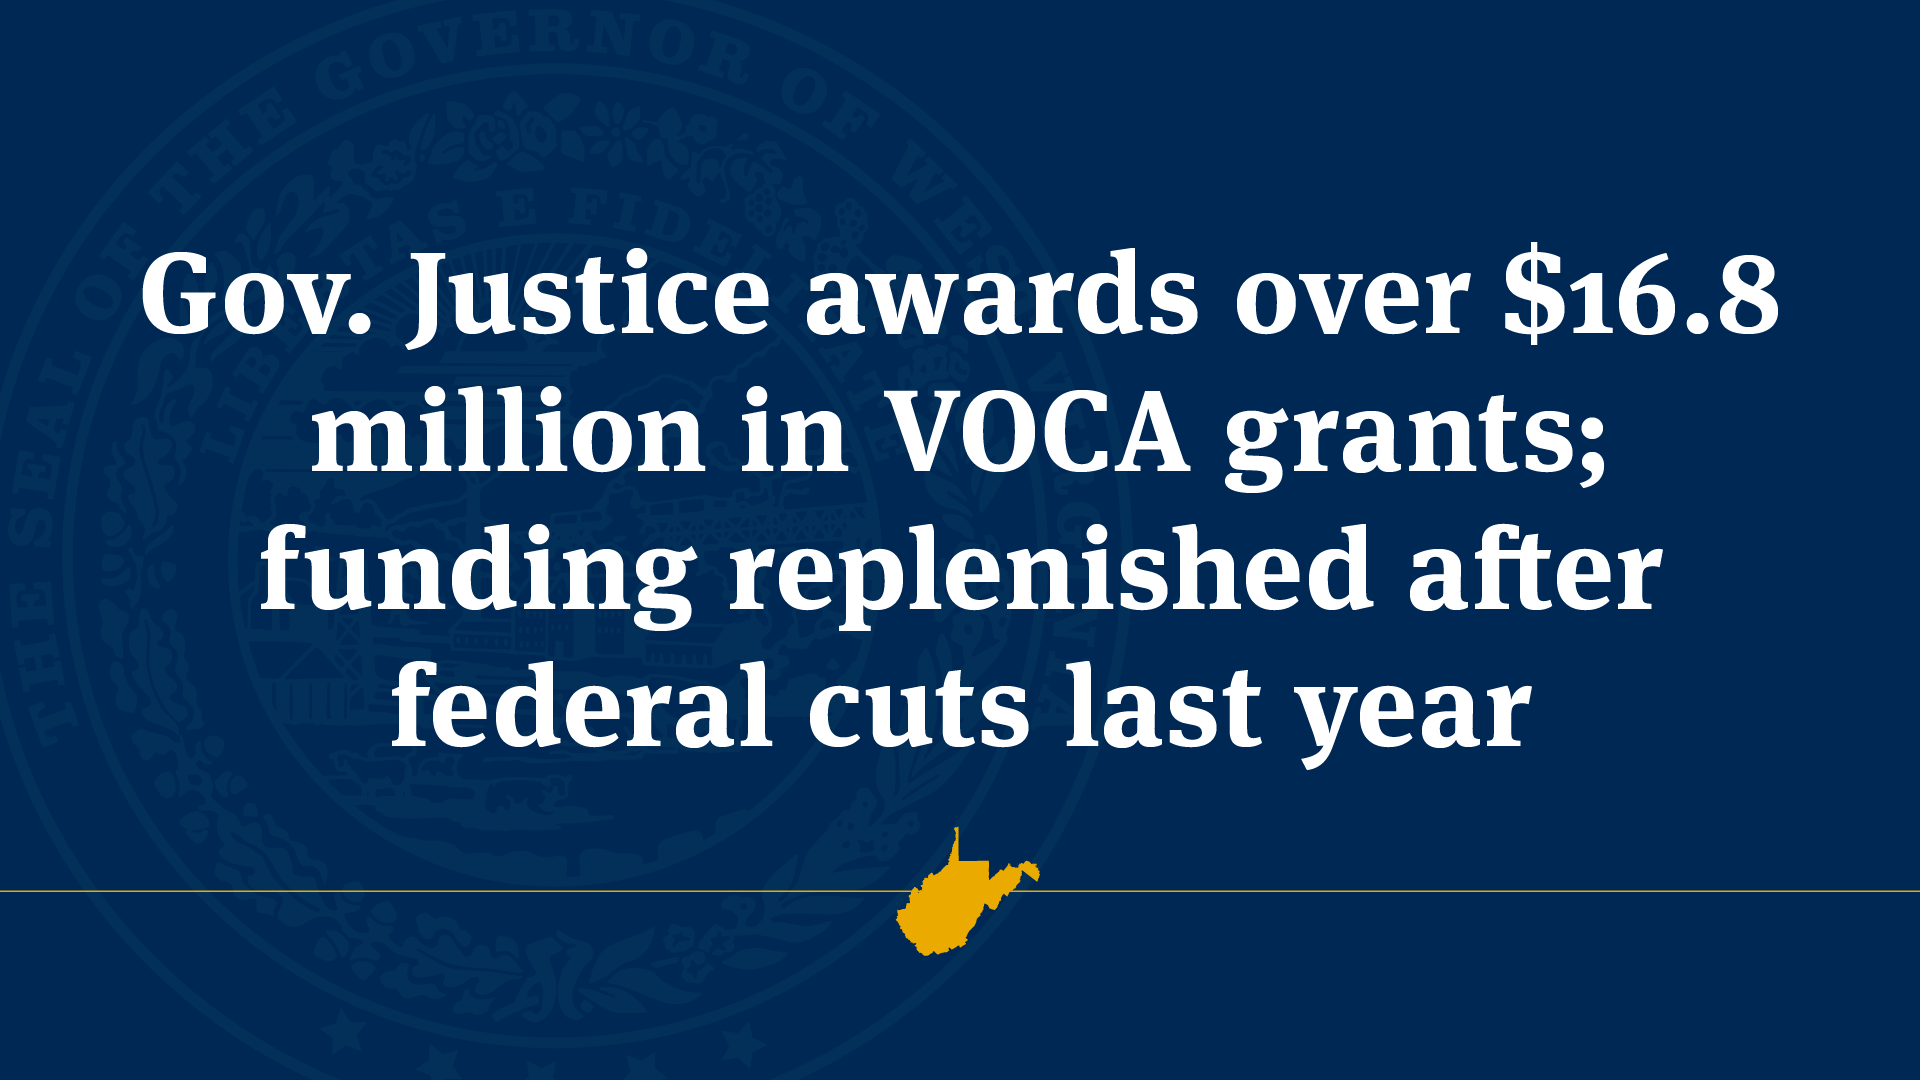 Gov. Justice awards over 16.8 million in VOCA grants; funding